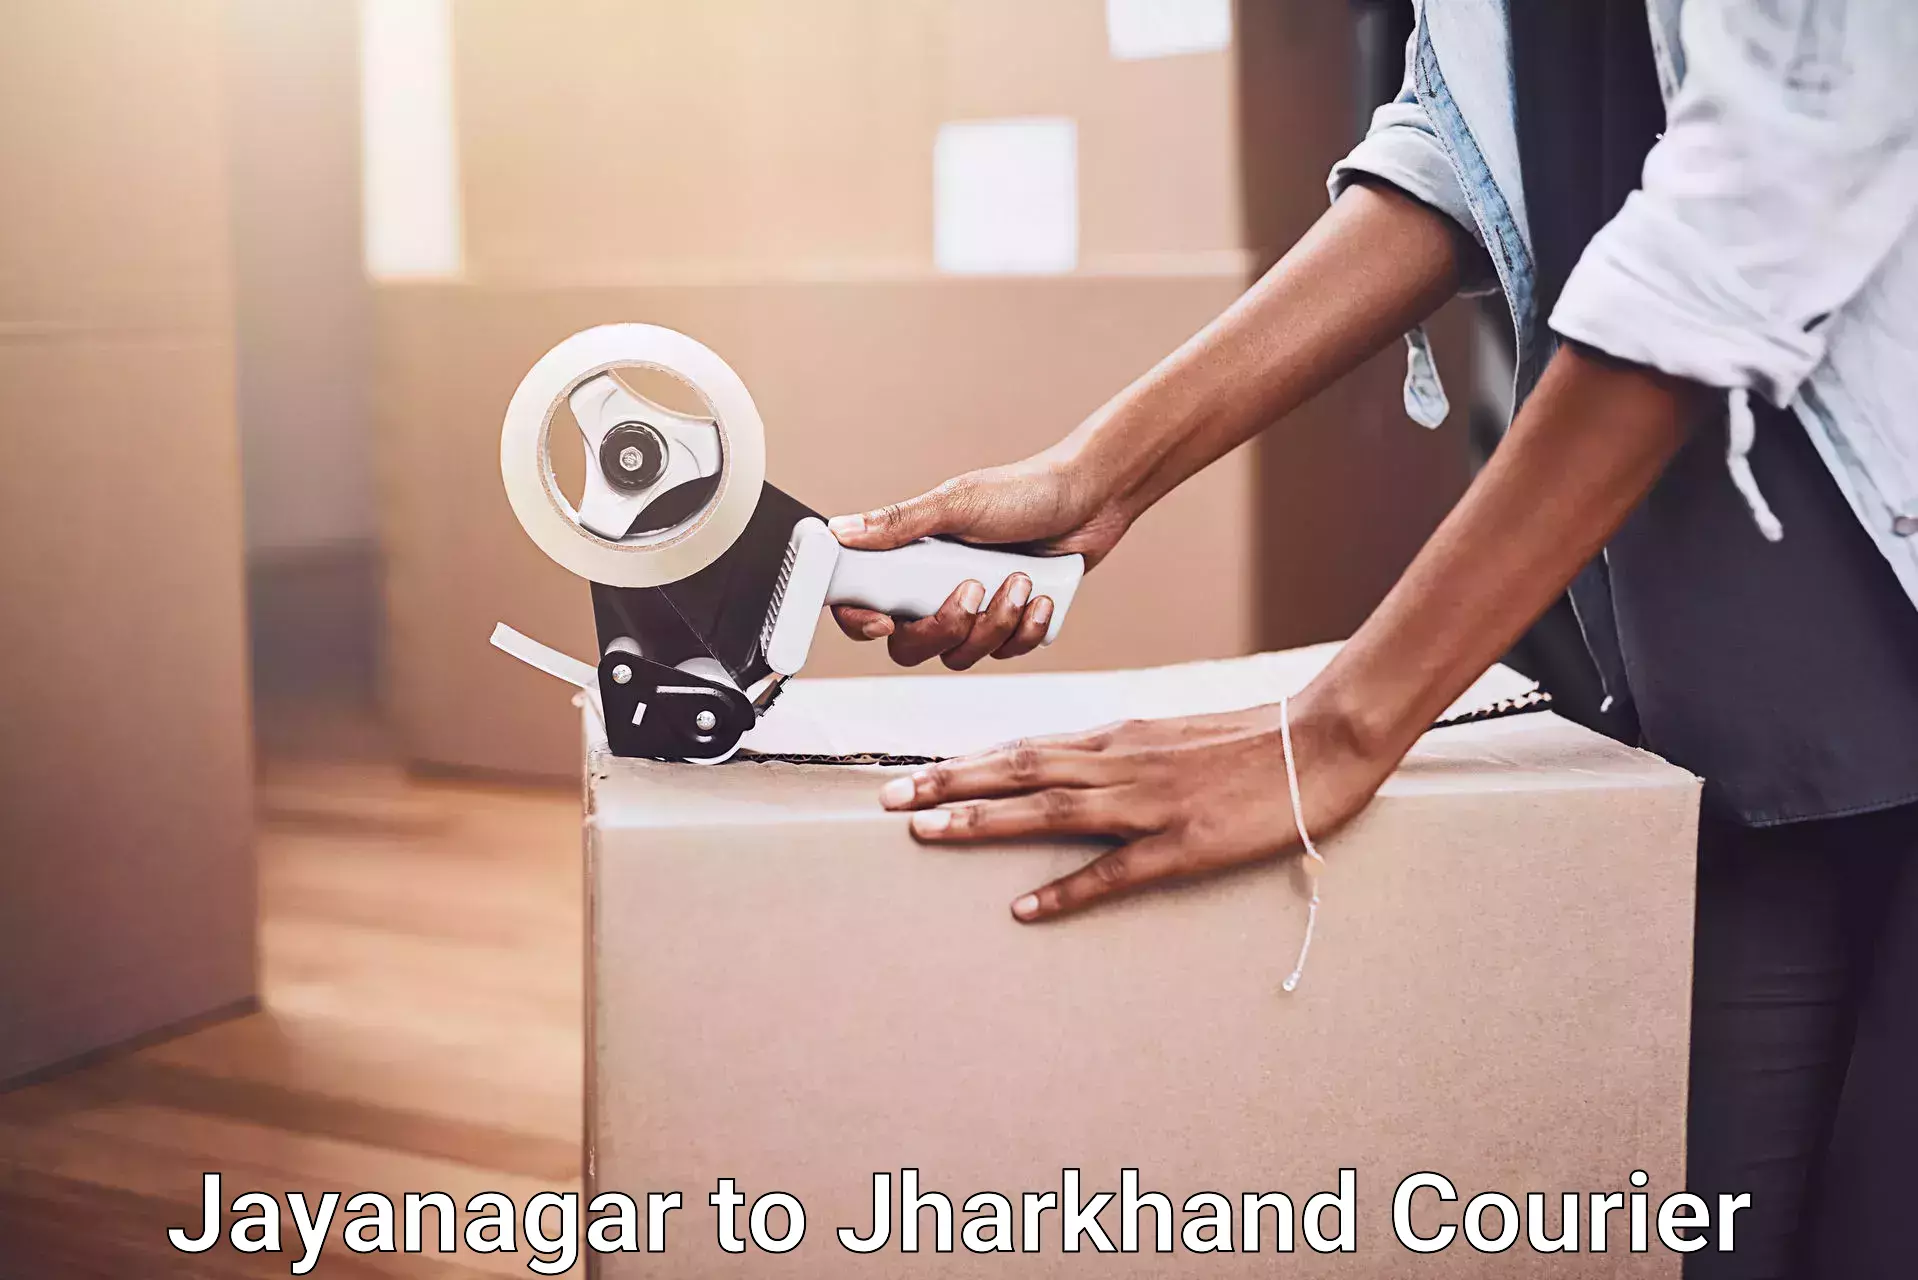 Skilled furniture transporters Jayanagar to Shikaripara